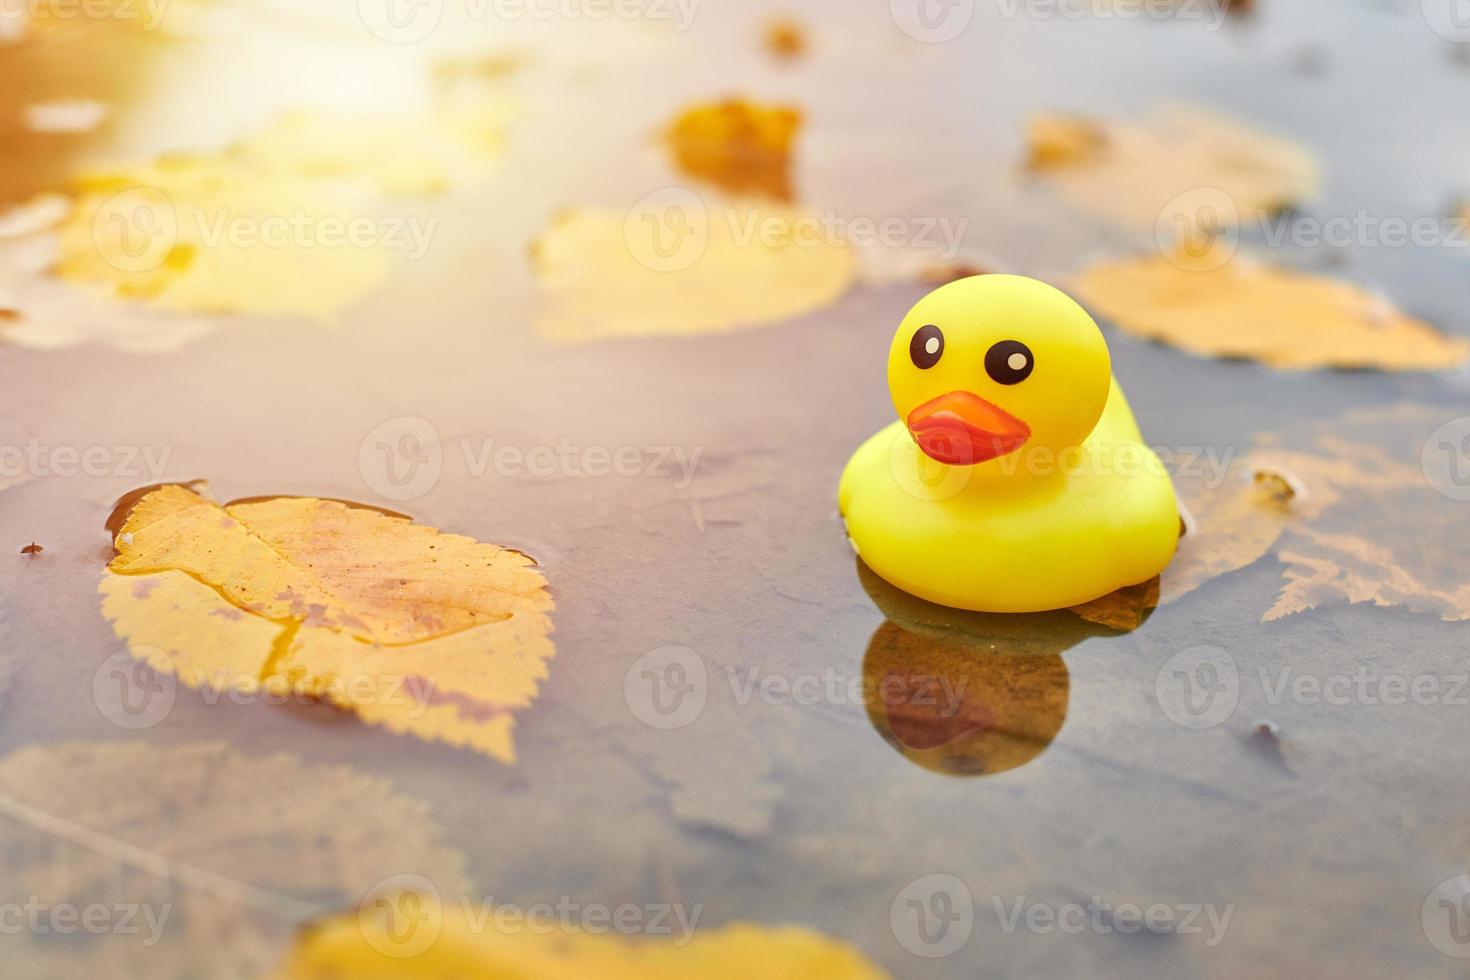 jouet de canard d'automne dans une flaque d'eau avec des feuilles photo